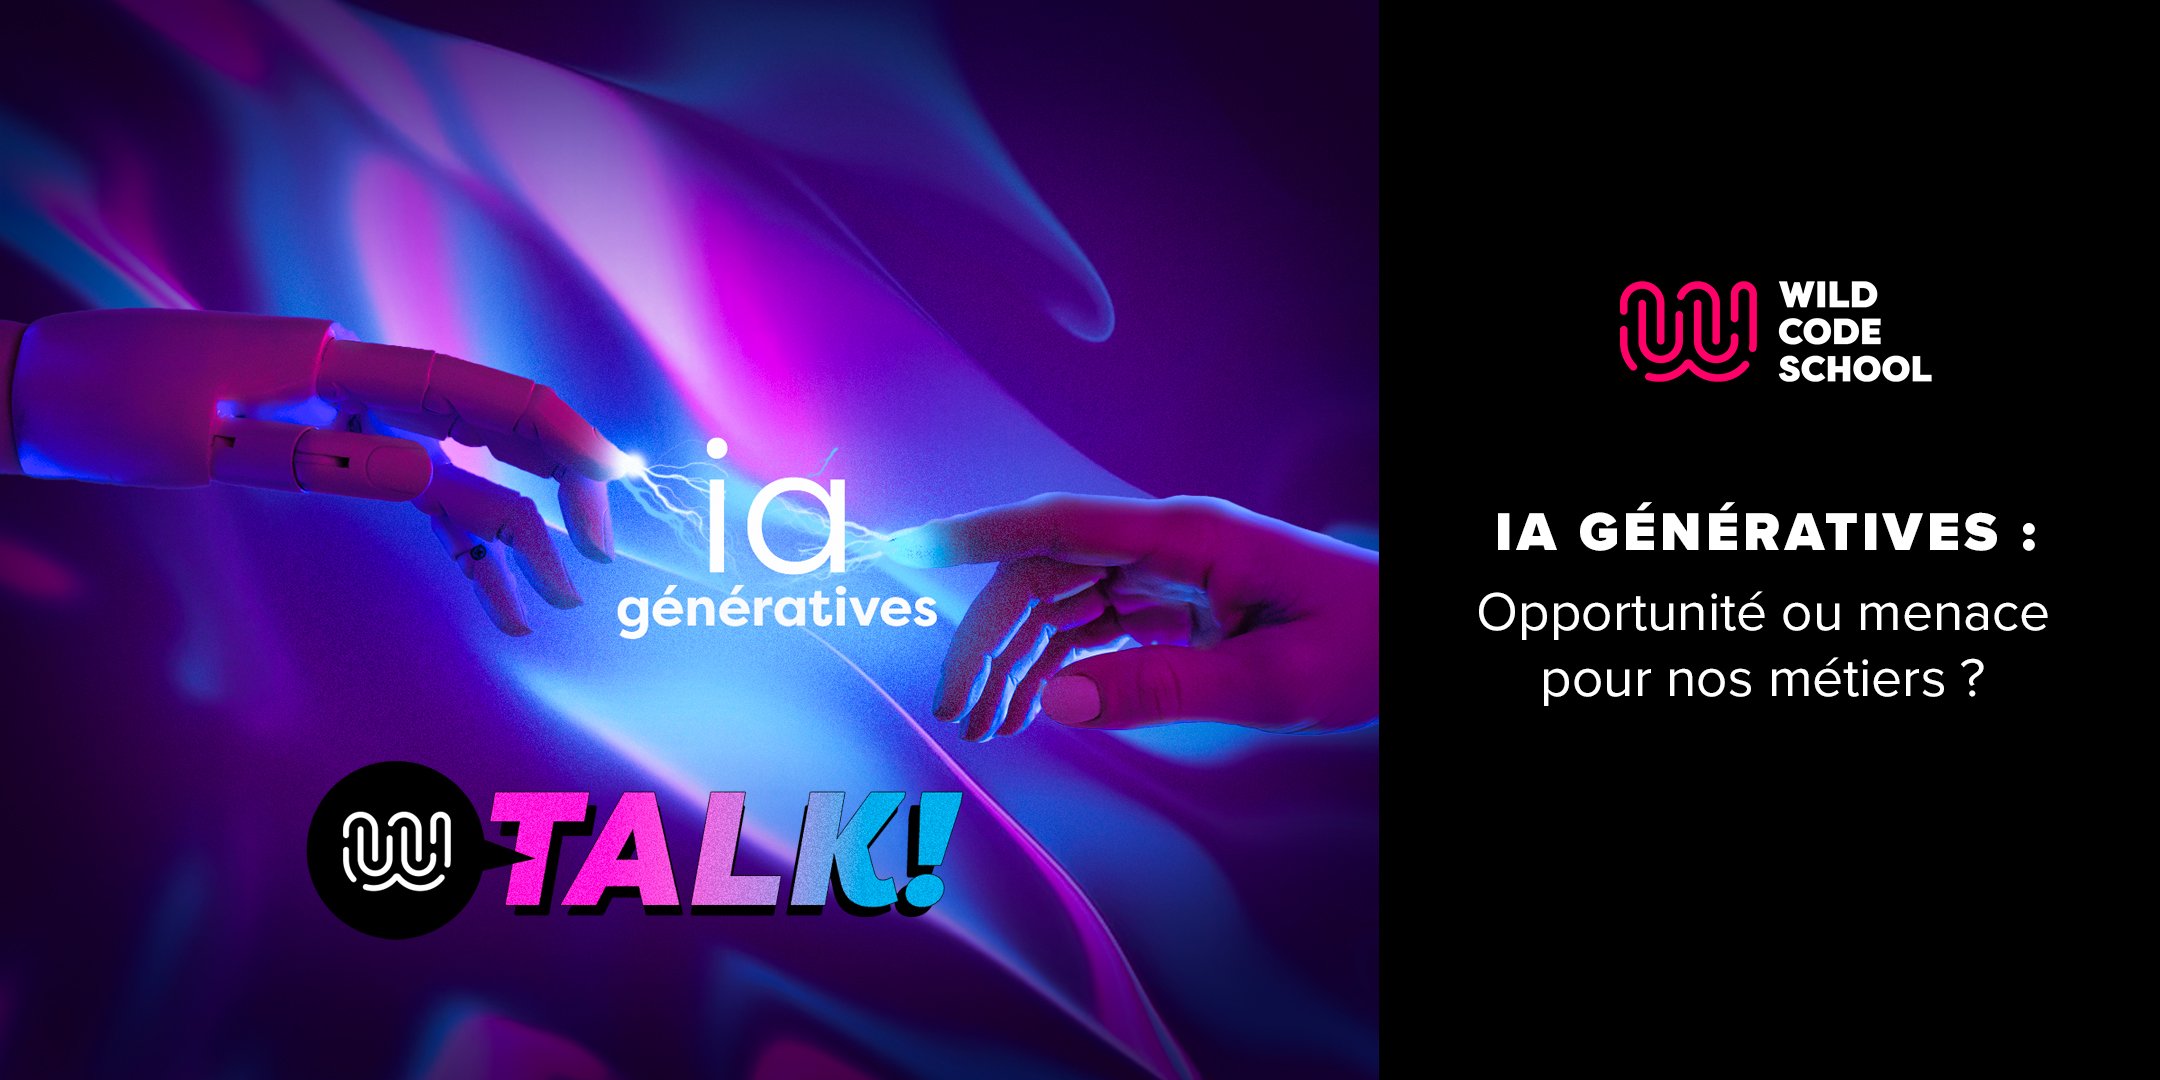 2160x1080-wild_talk_ia-generatives